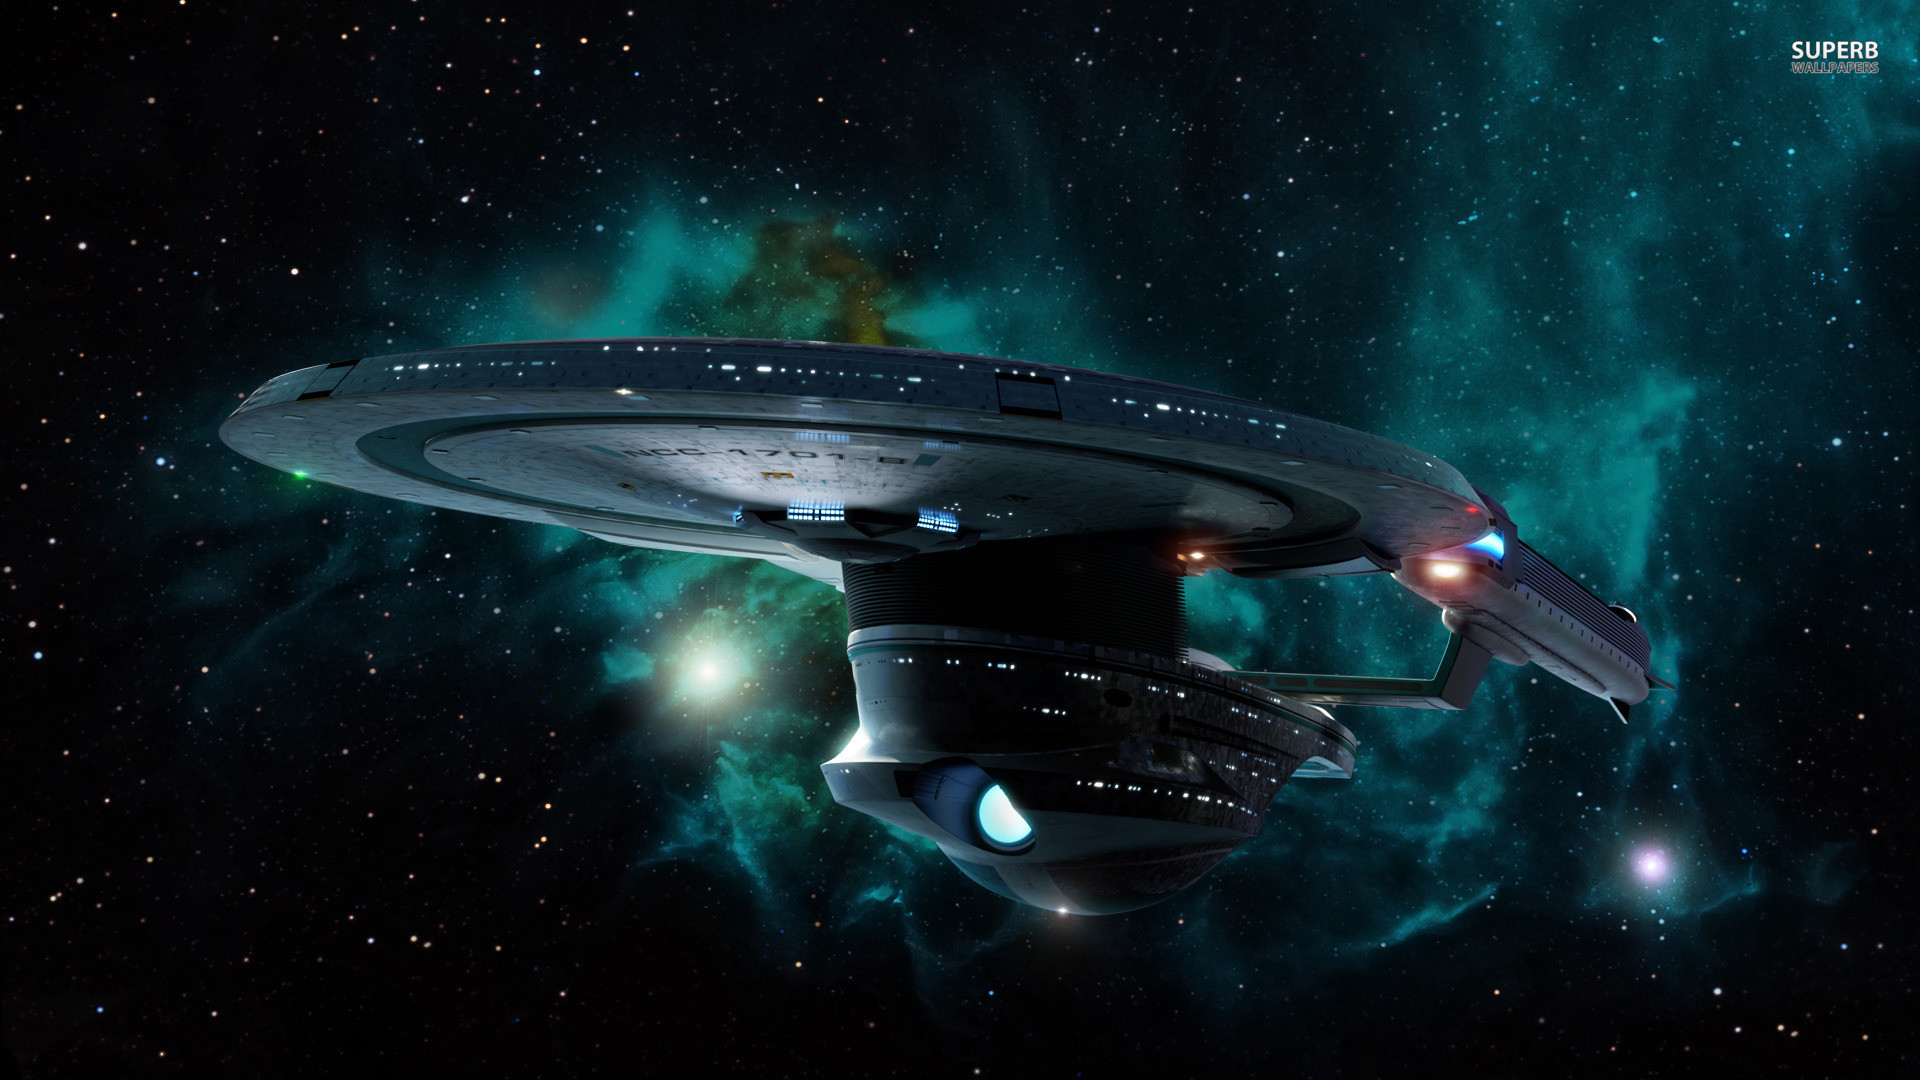 Starship Enterprise at warp wallpaper – Movie wallpapers – #25372